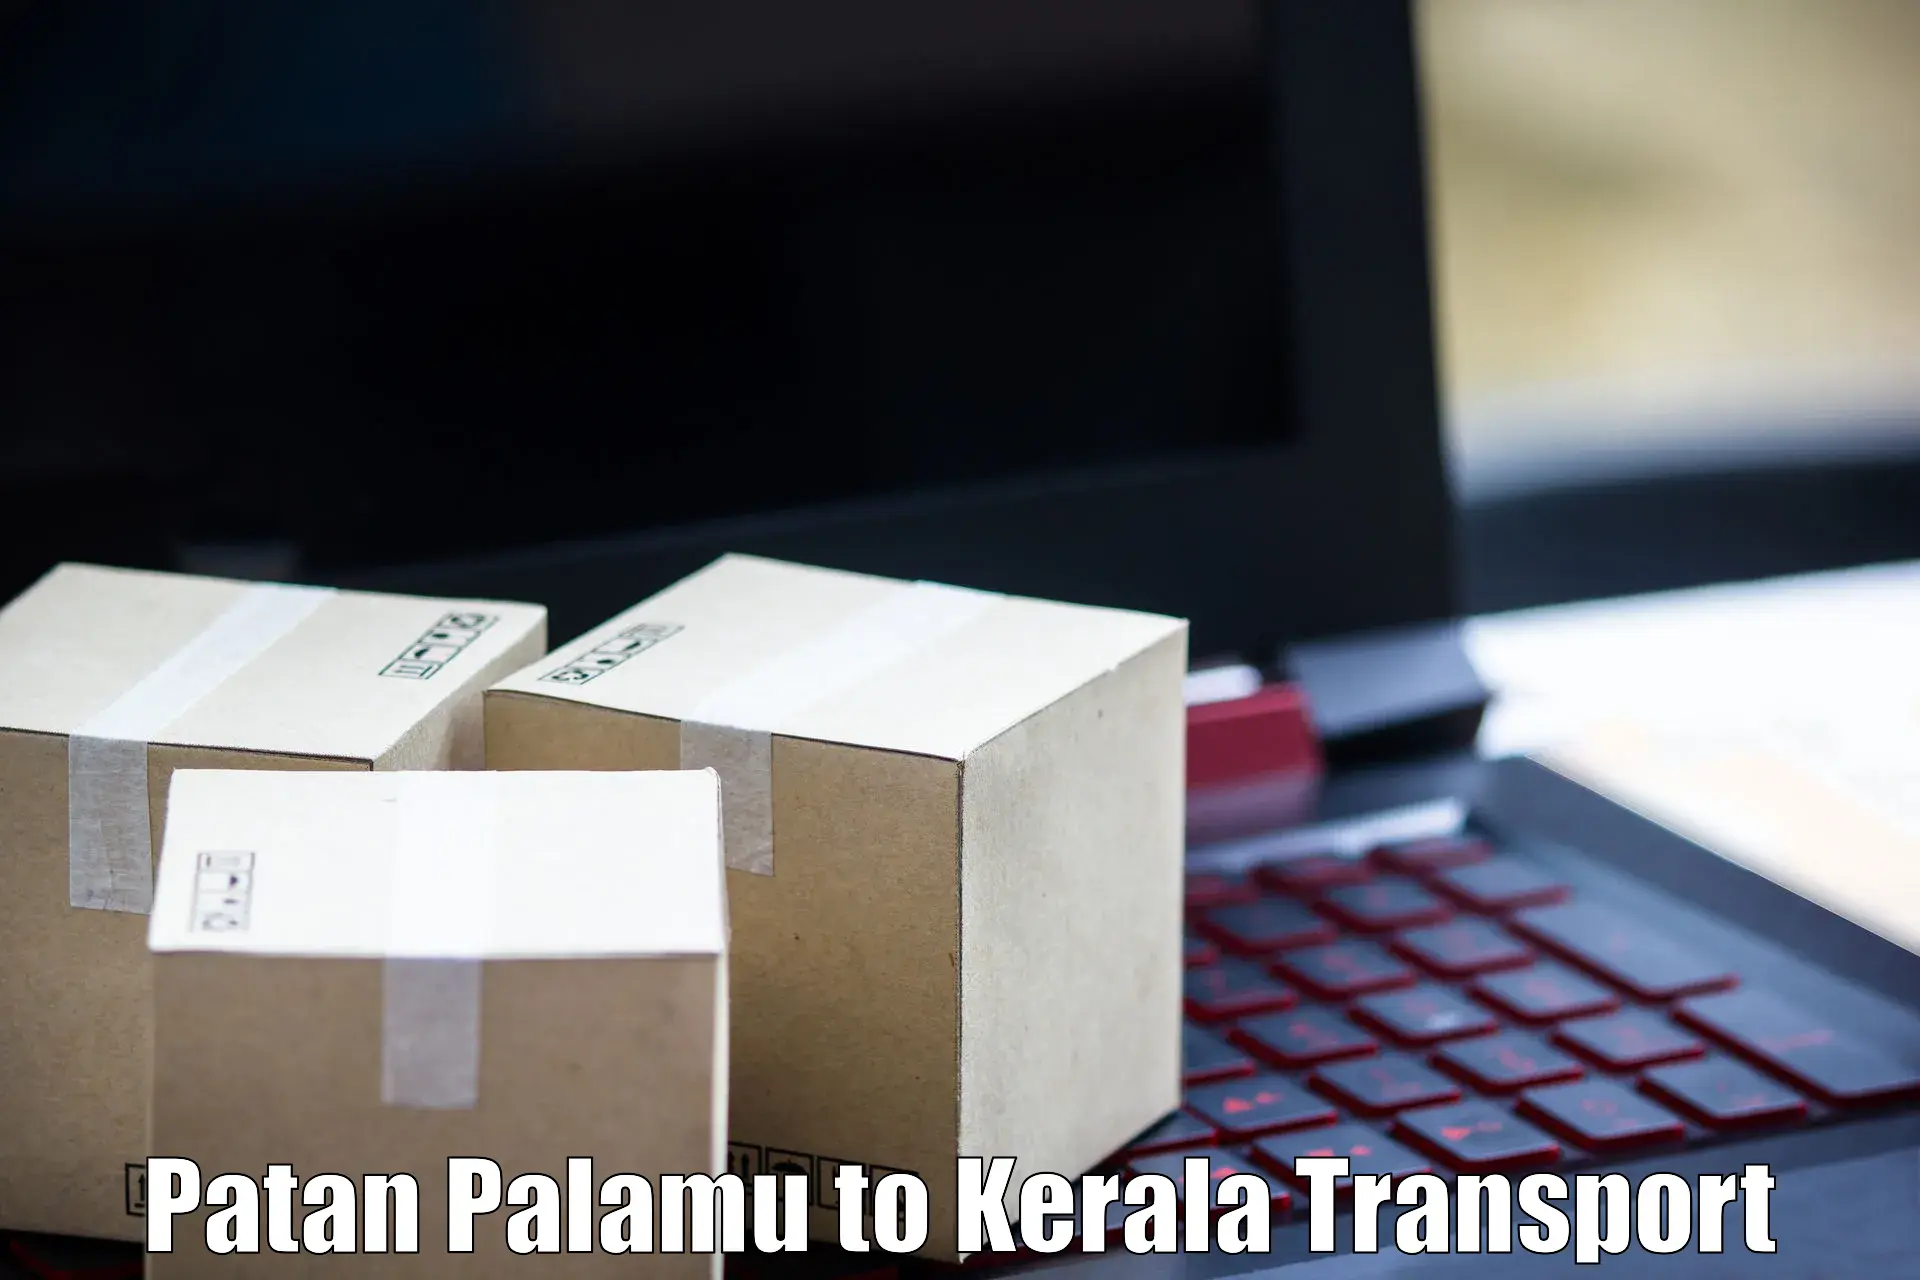 Nearest transport service Patan Palamu to Calicut University Malappuram